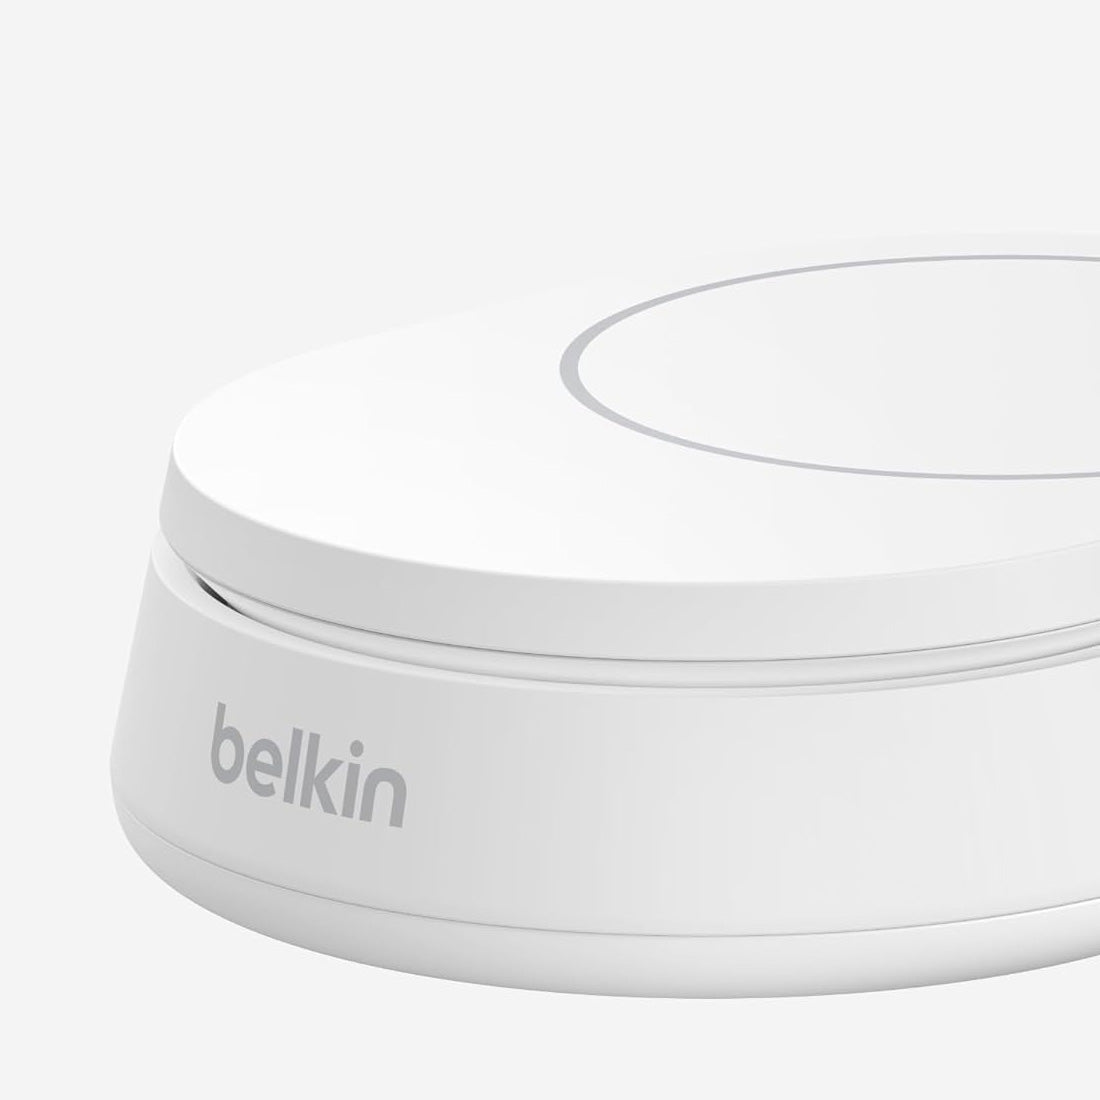 Drahtloses Ladegerät Belkin Boost Pro Convertible Qi2 15W WIA008 für iPhone mit MagSafe (noPSU), Weiß